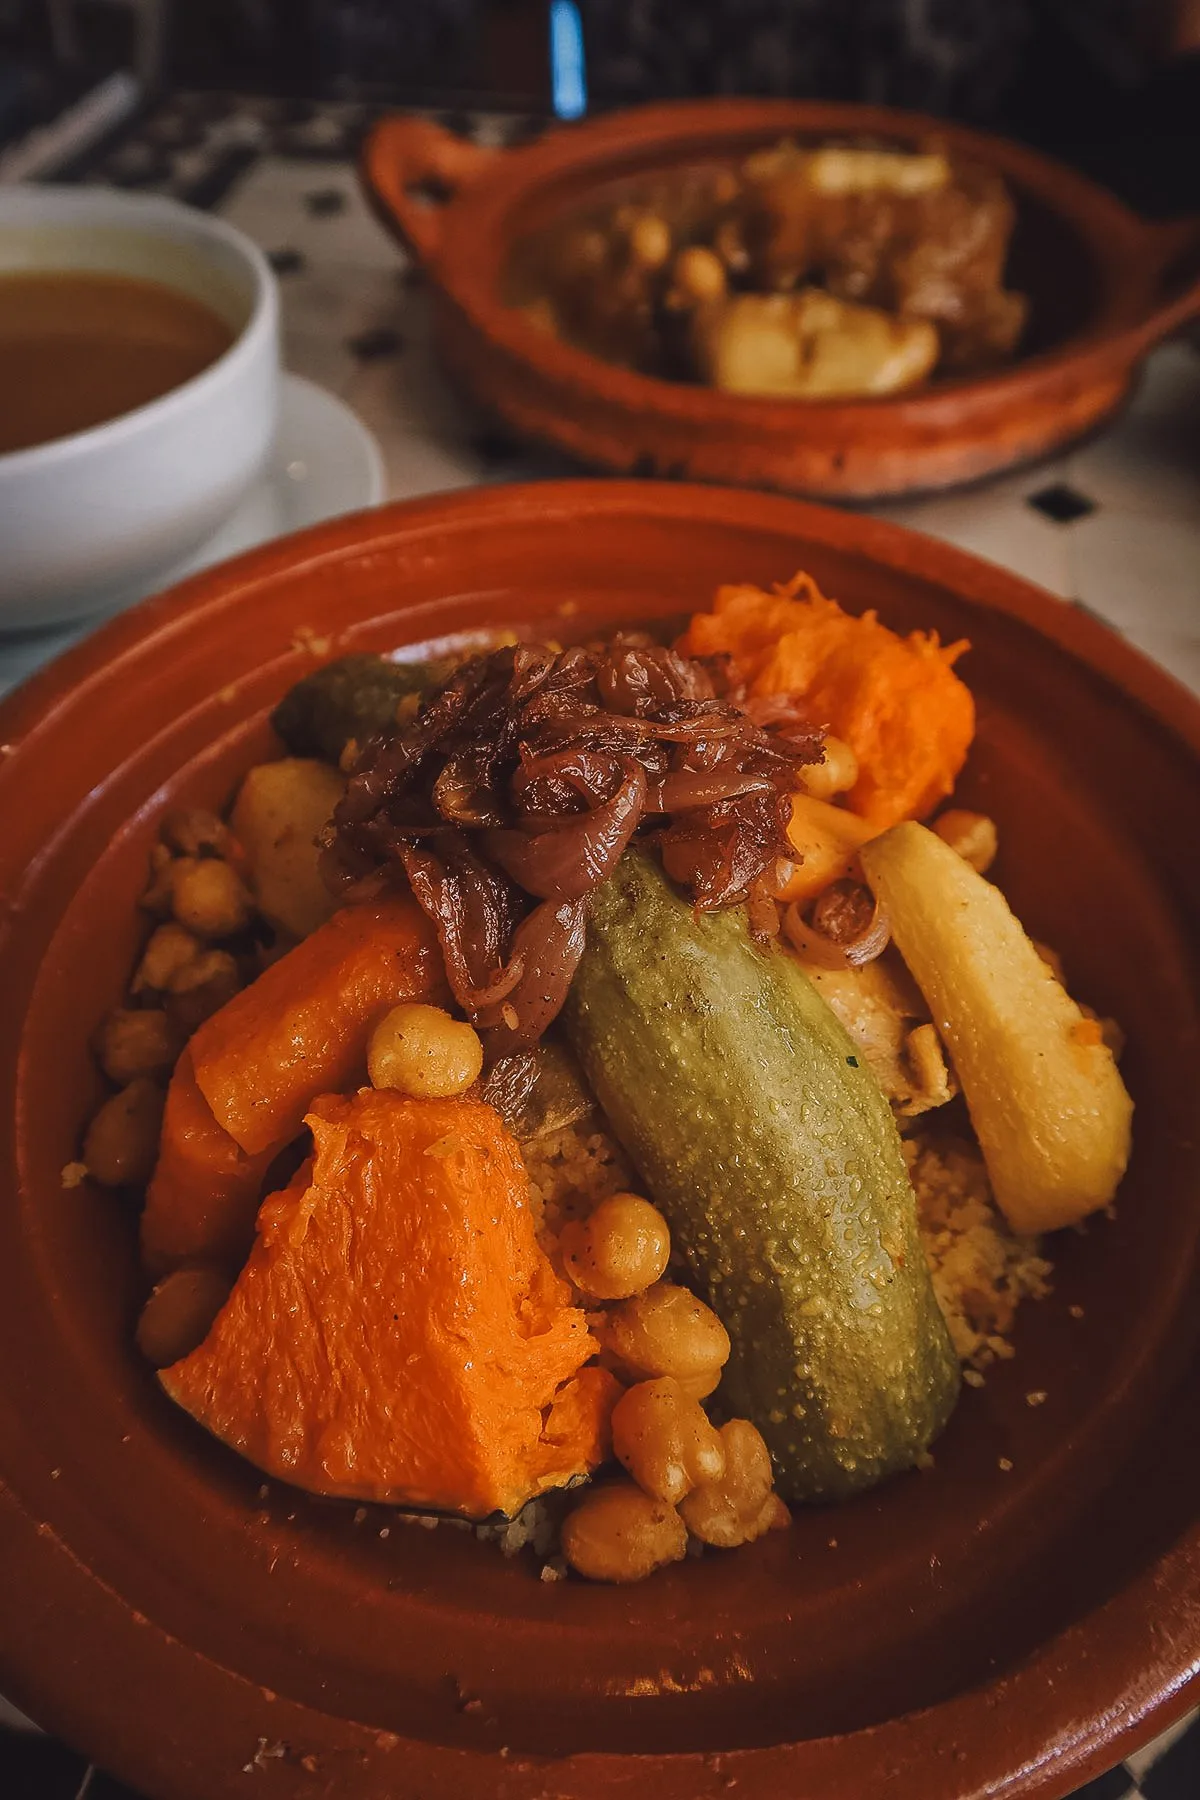 Couscous at a restaurant in Marrakech